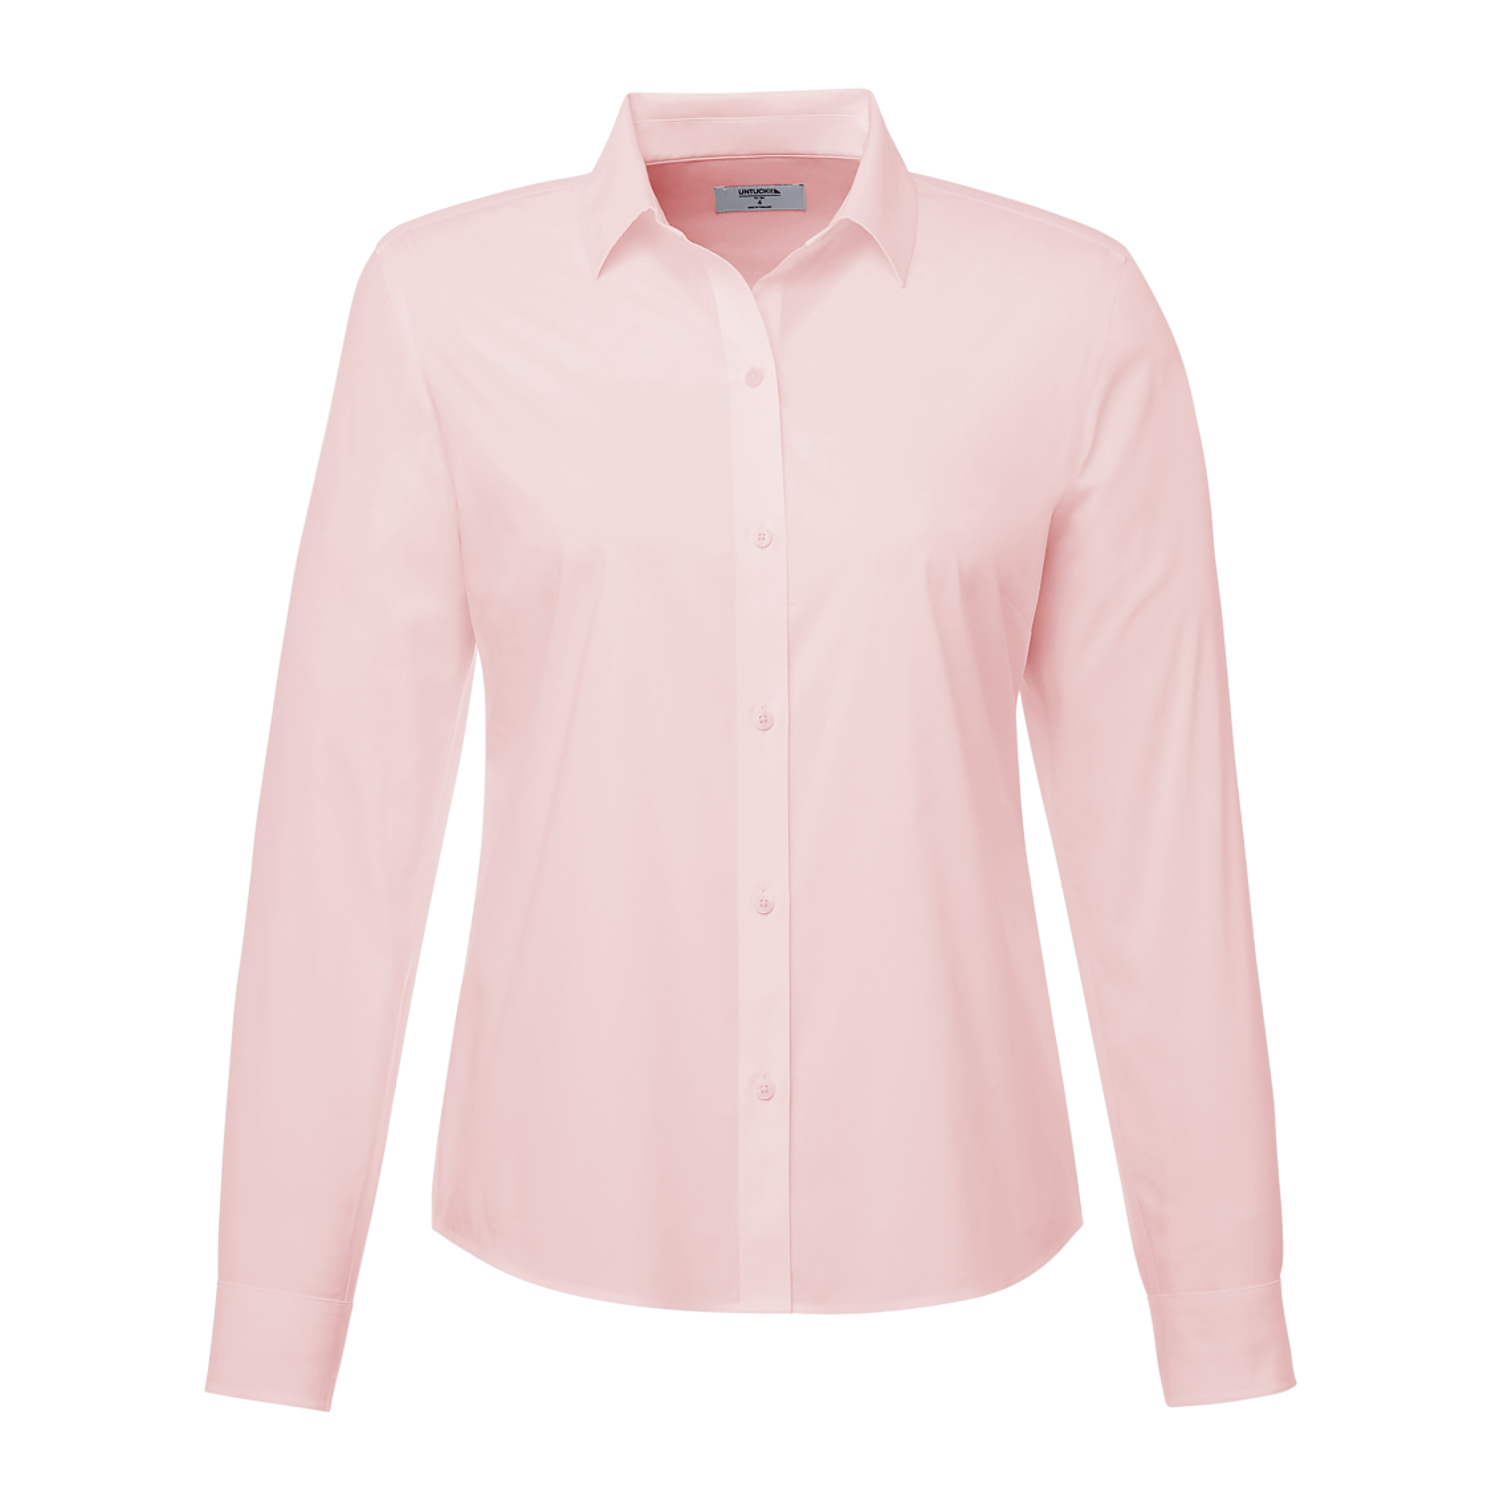 Skkinvalue's Sleep Shirt Button Down long shirt for women – skkinvalue